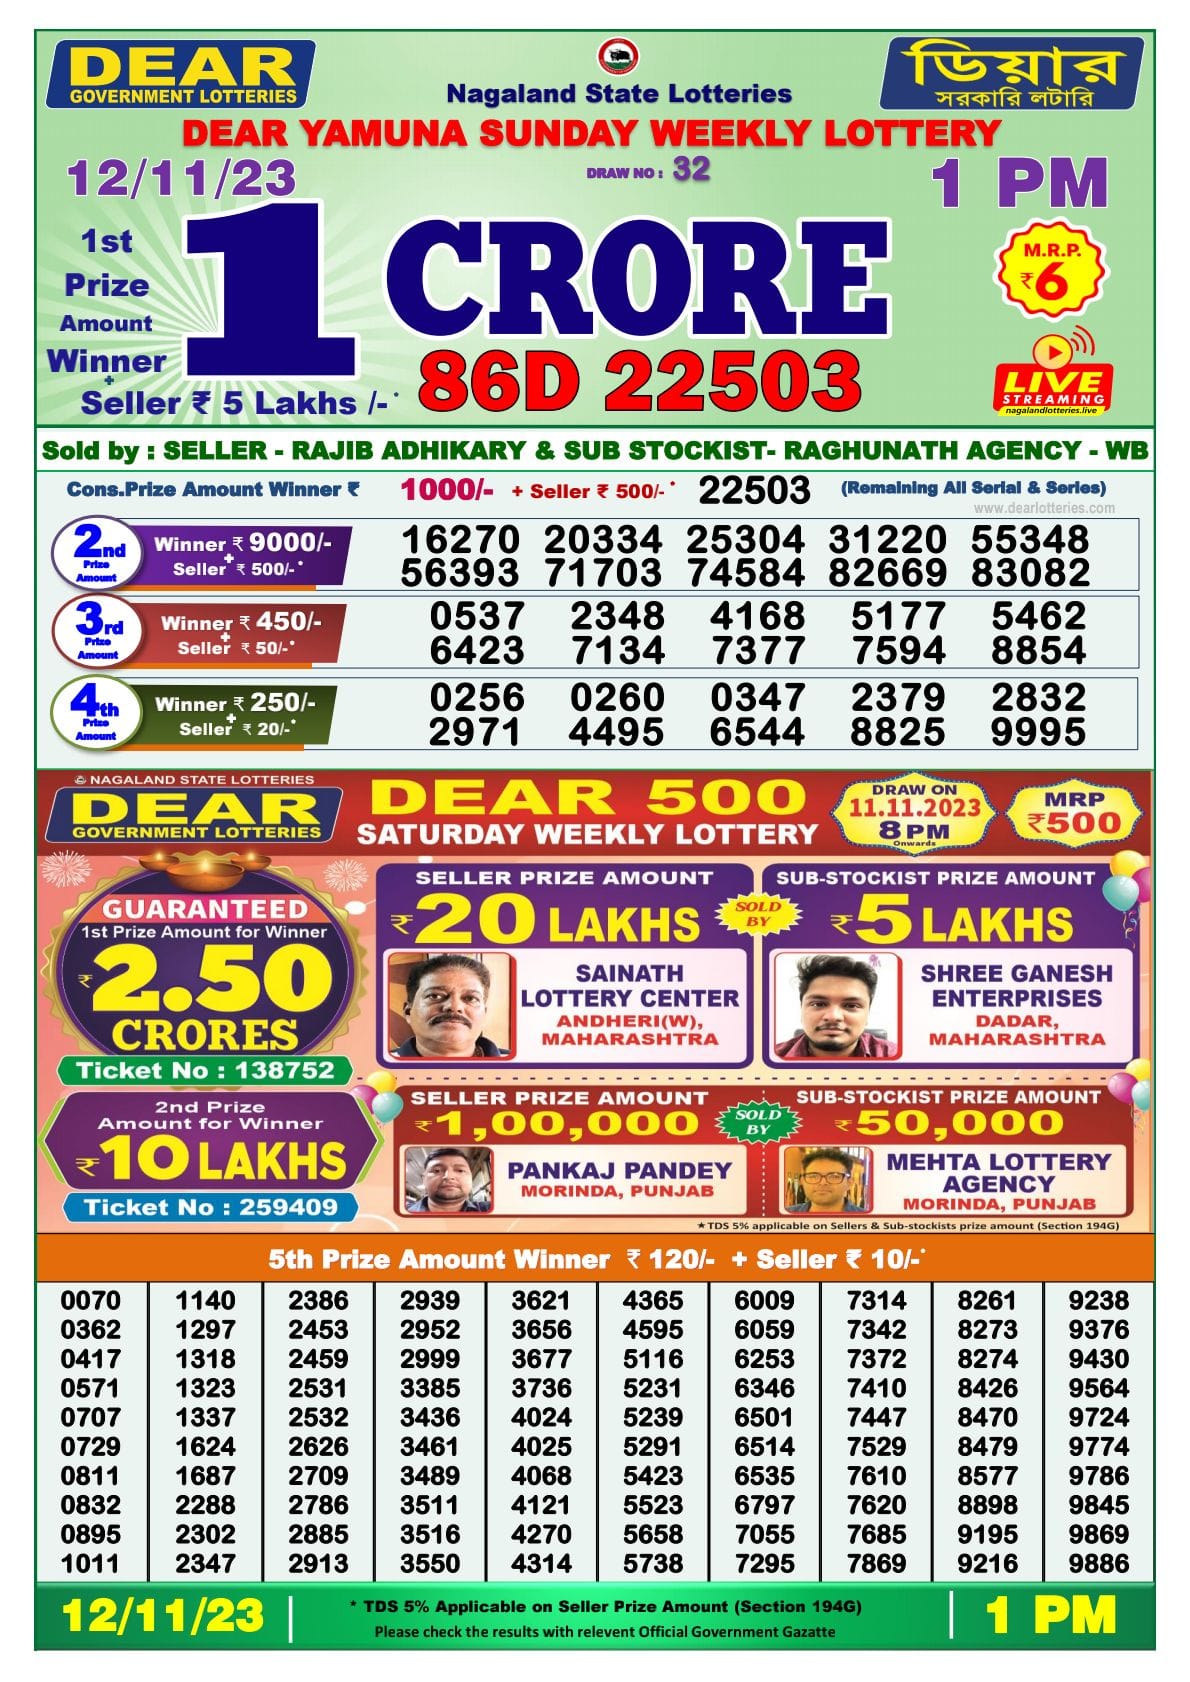 Rajshree Lottery Live Draw - Goa | Rajshree Lottery Result Today - YouTube